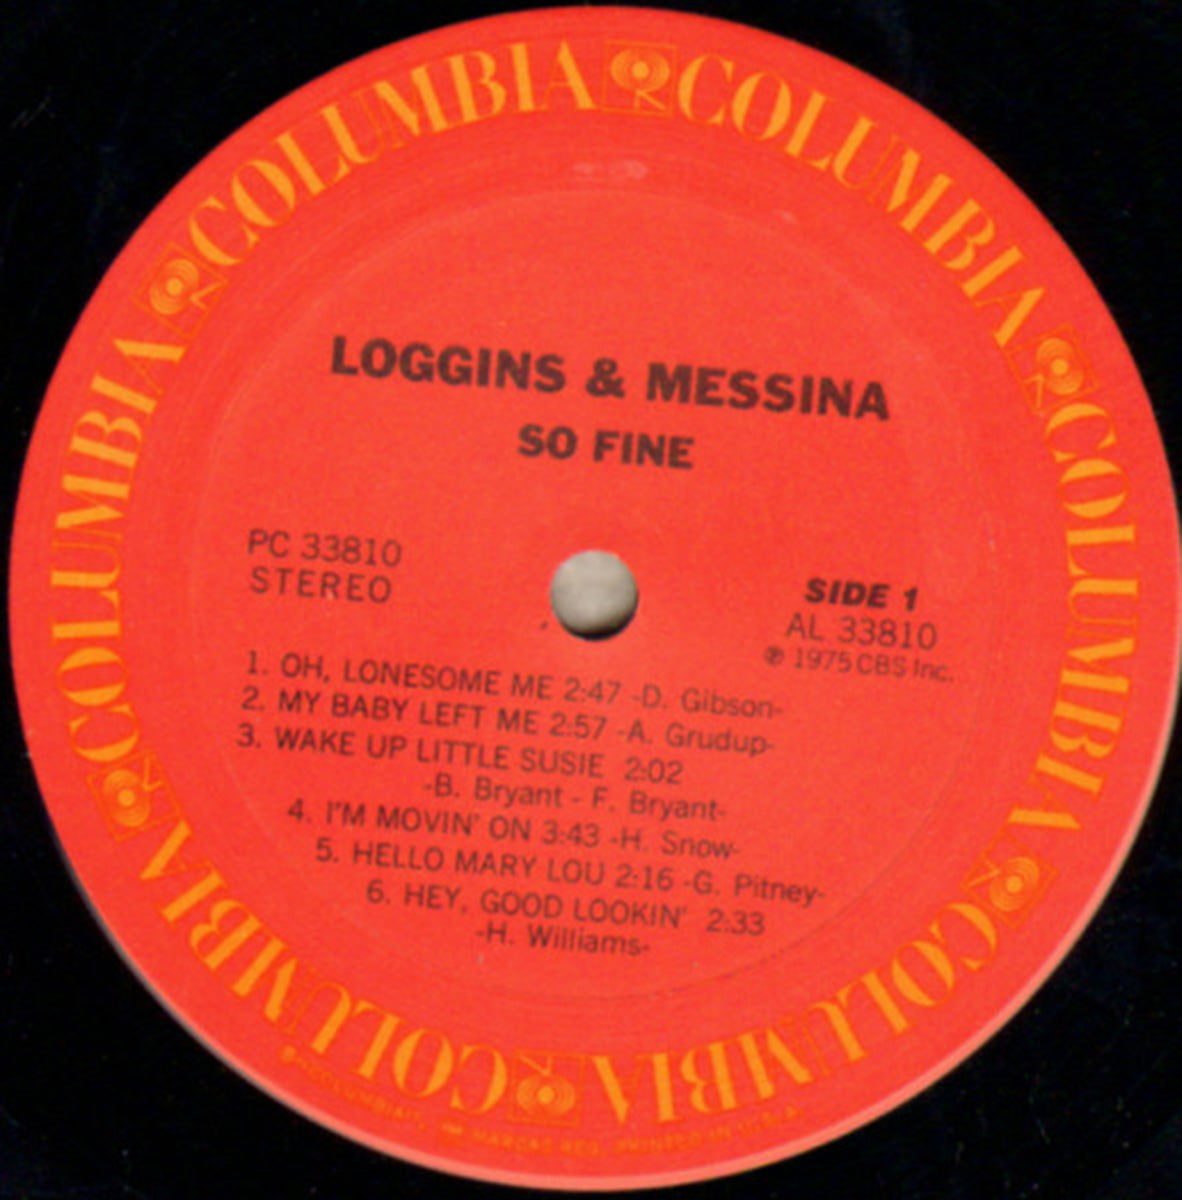 Loggins & Messina – So Fine - 1975